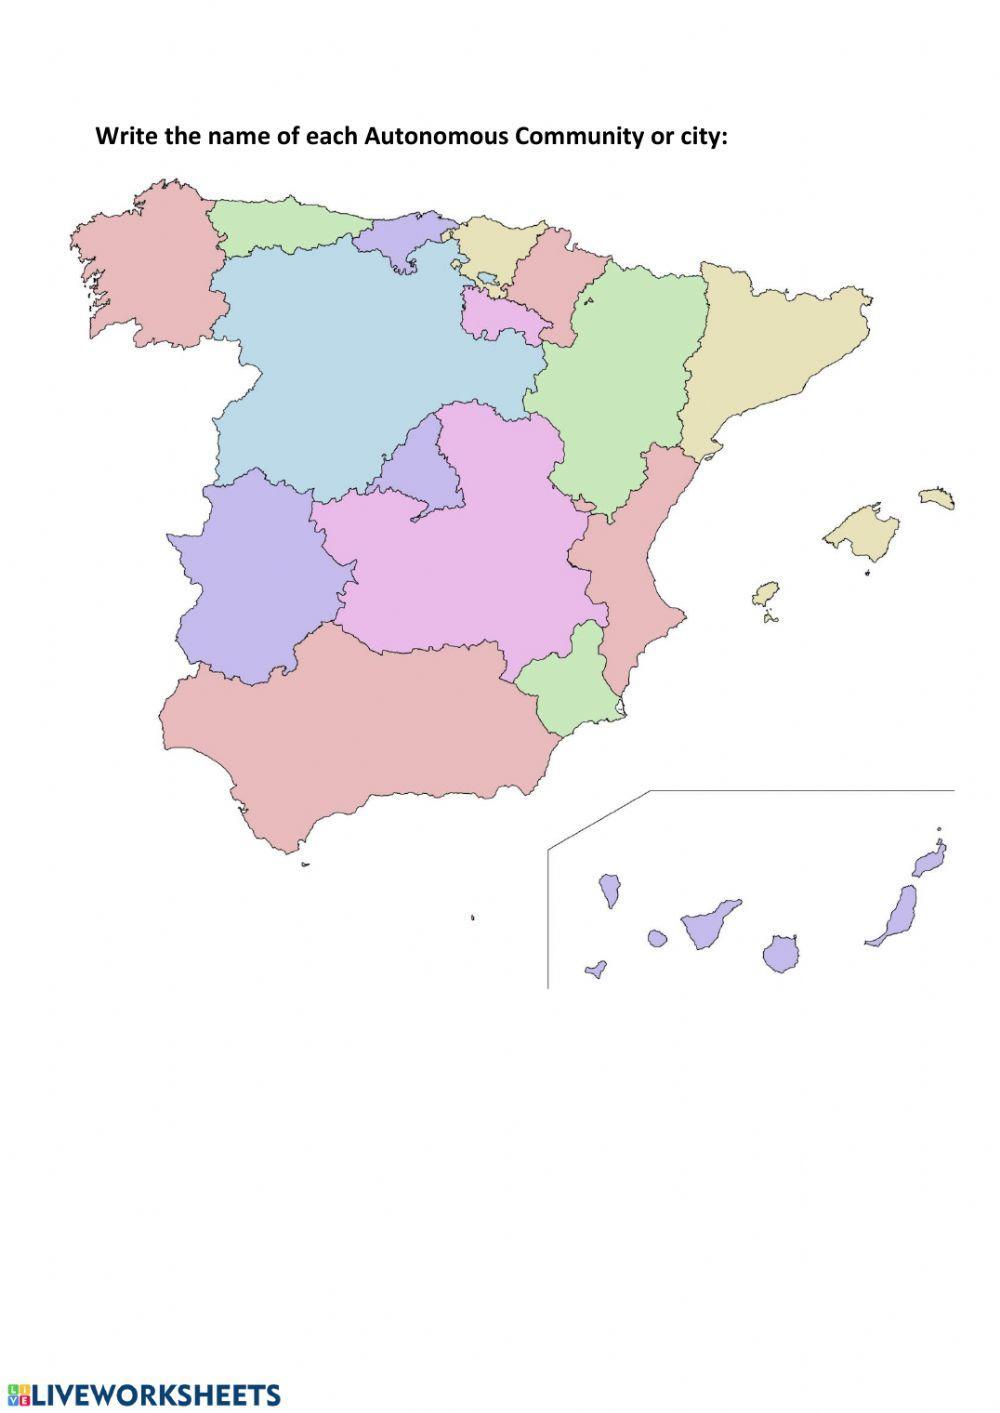 Spain: provinces and autonomous communities